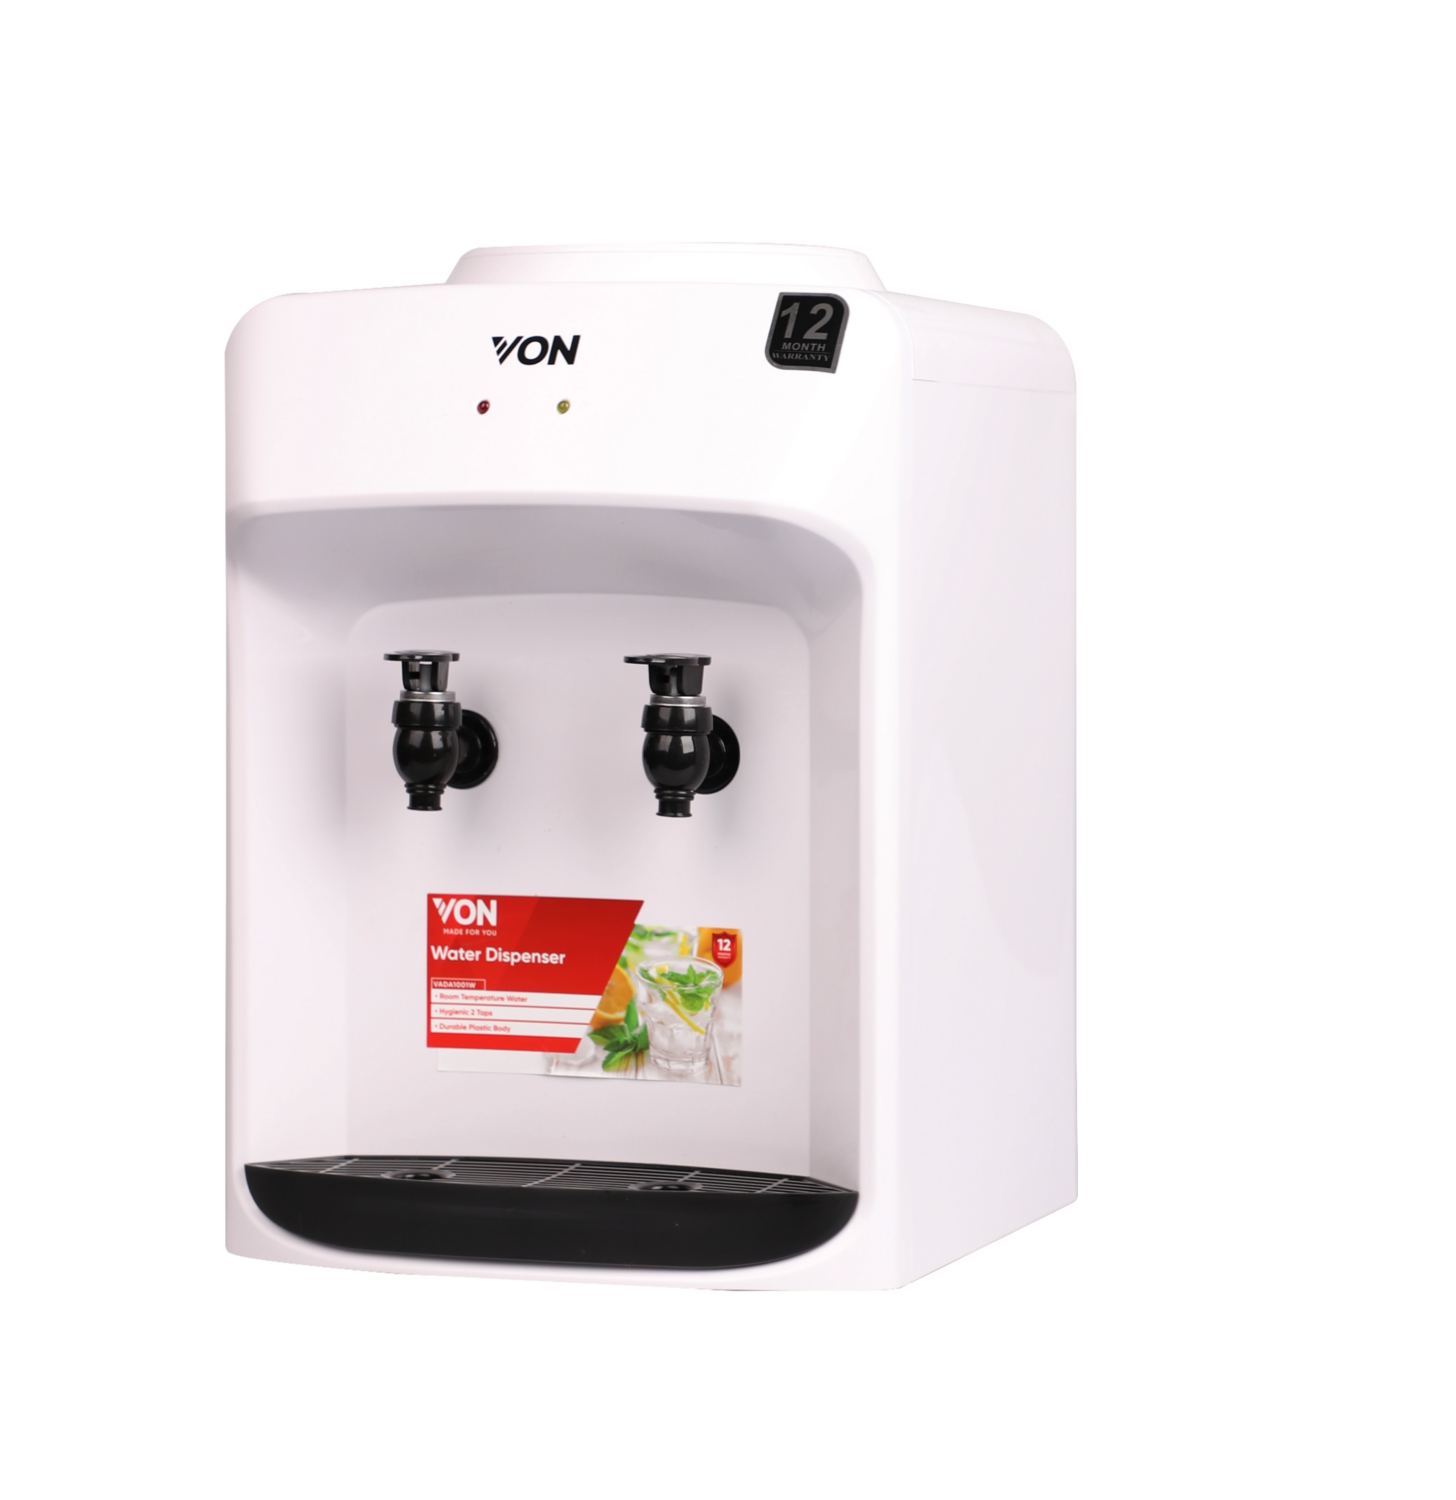 Von Hotpoint VADA1001W Tabletop Water Dispenser Normal - White